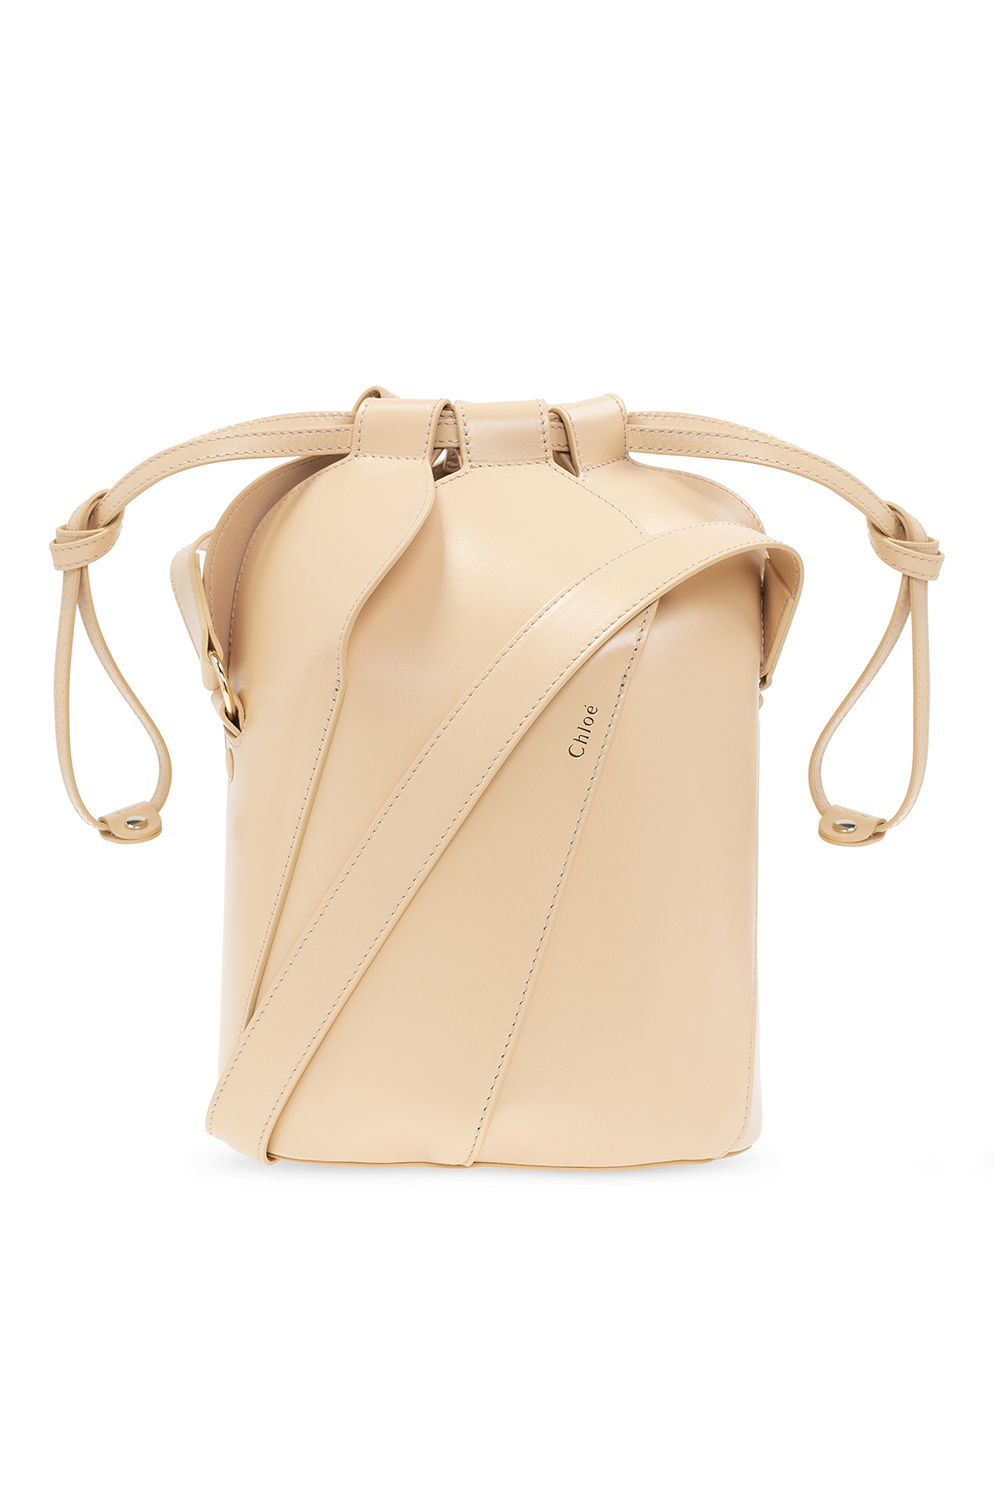 Chloé ‘Tulip’ shoulder bag